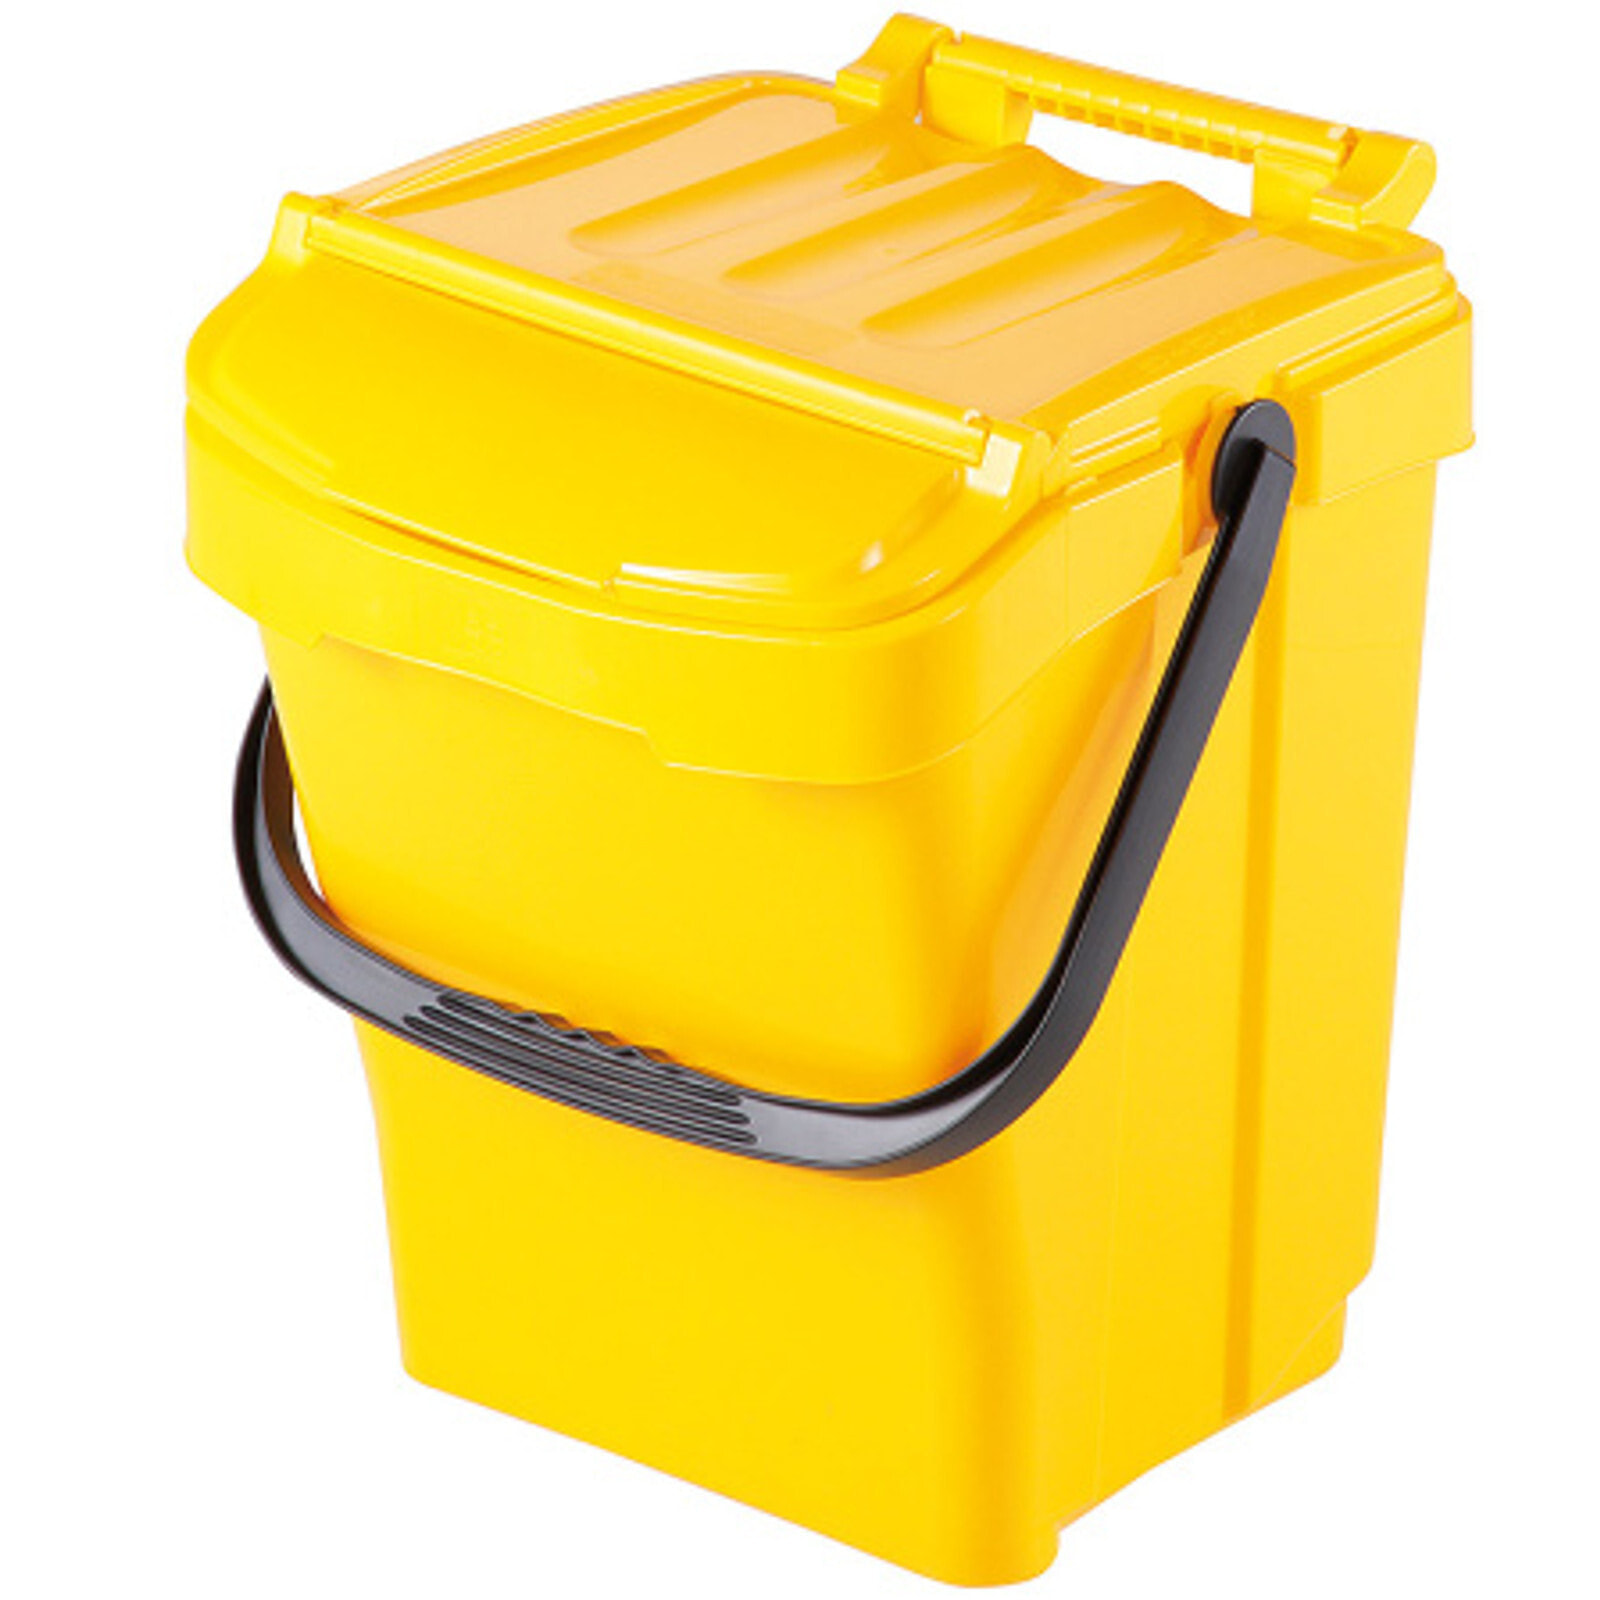 URBA PLUS 40L bin for sorting waste sorting - yellow